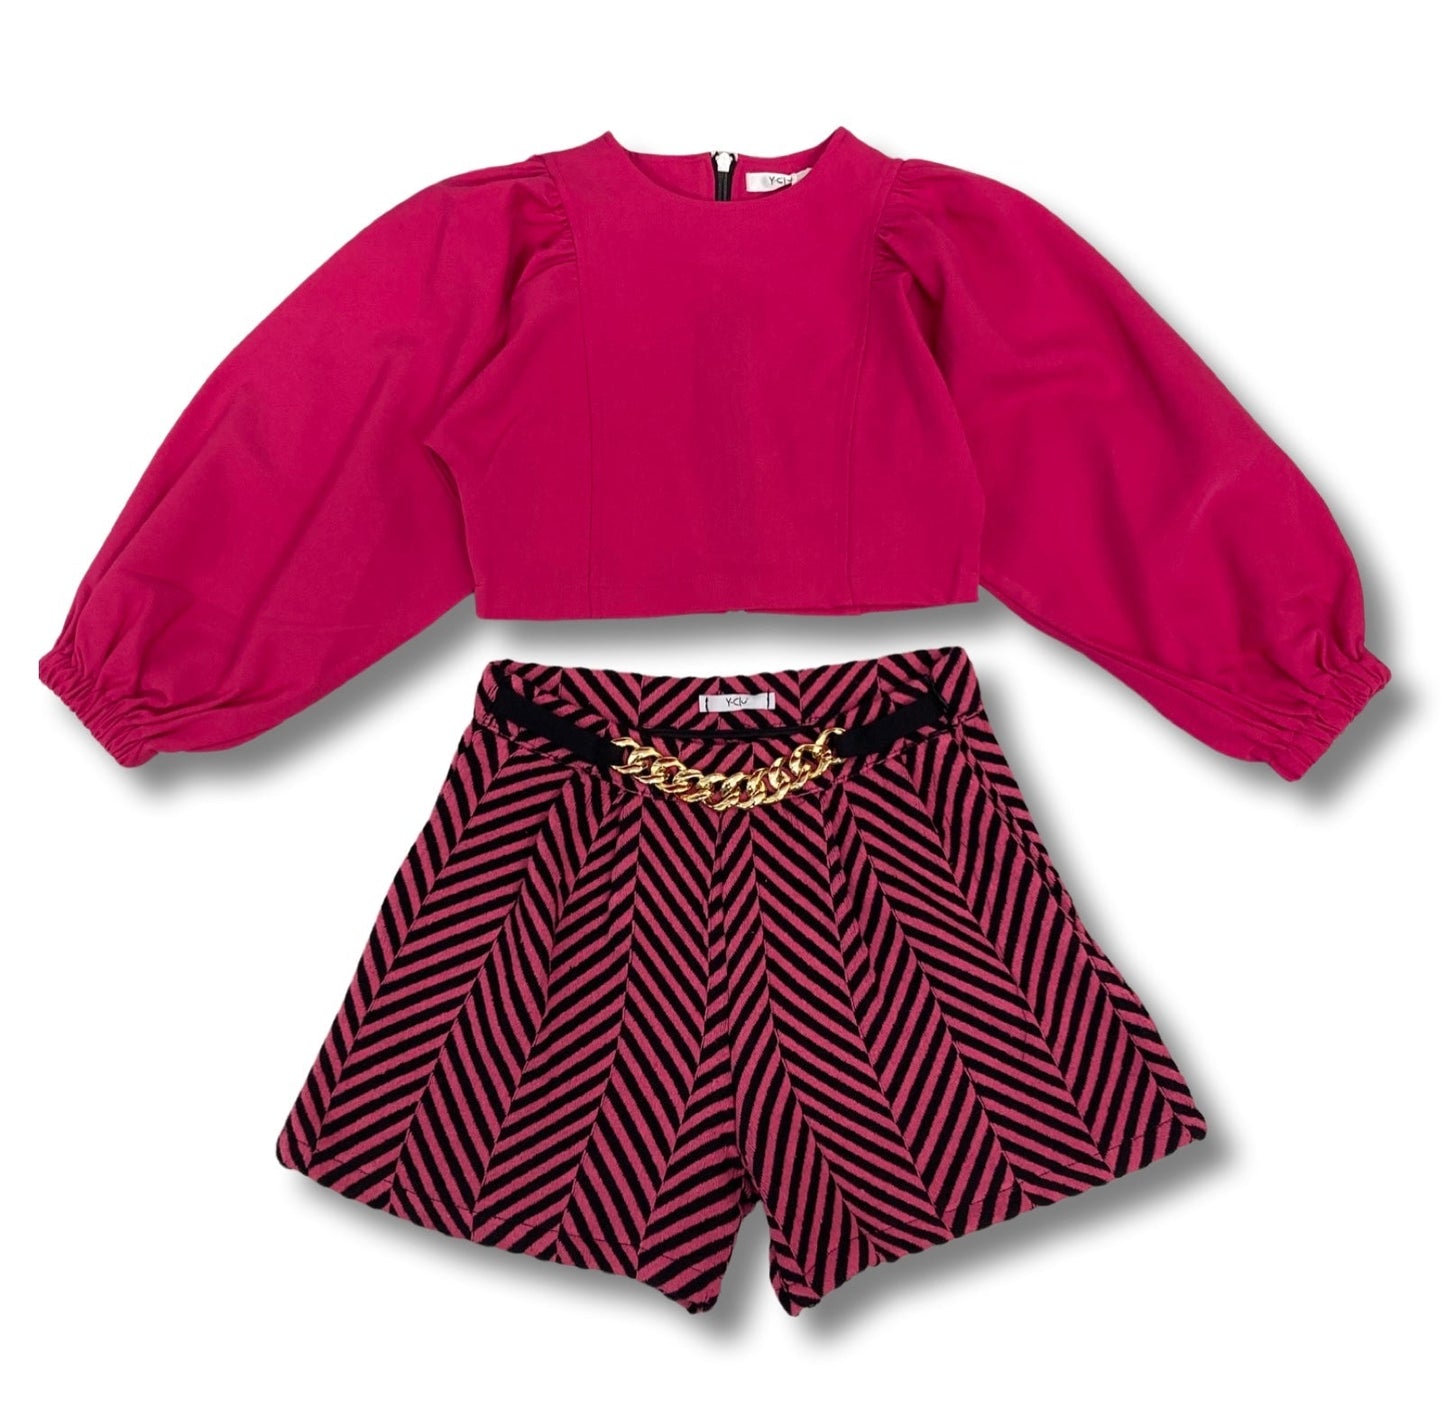 Abbigliamento per bambini , Camicia fuxia corta con ceniera per Ragazza da 8anni a 16anni Y-CLU Y18099 - BabyBimbo 0-16, abbigliamento bambini